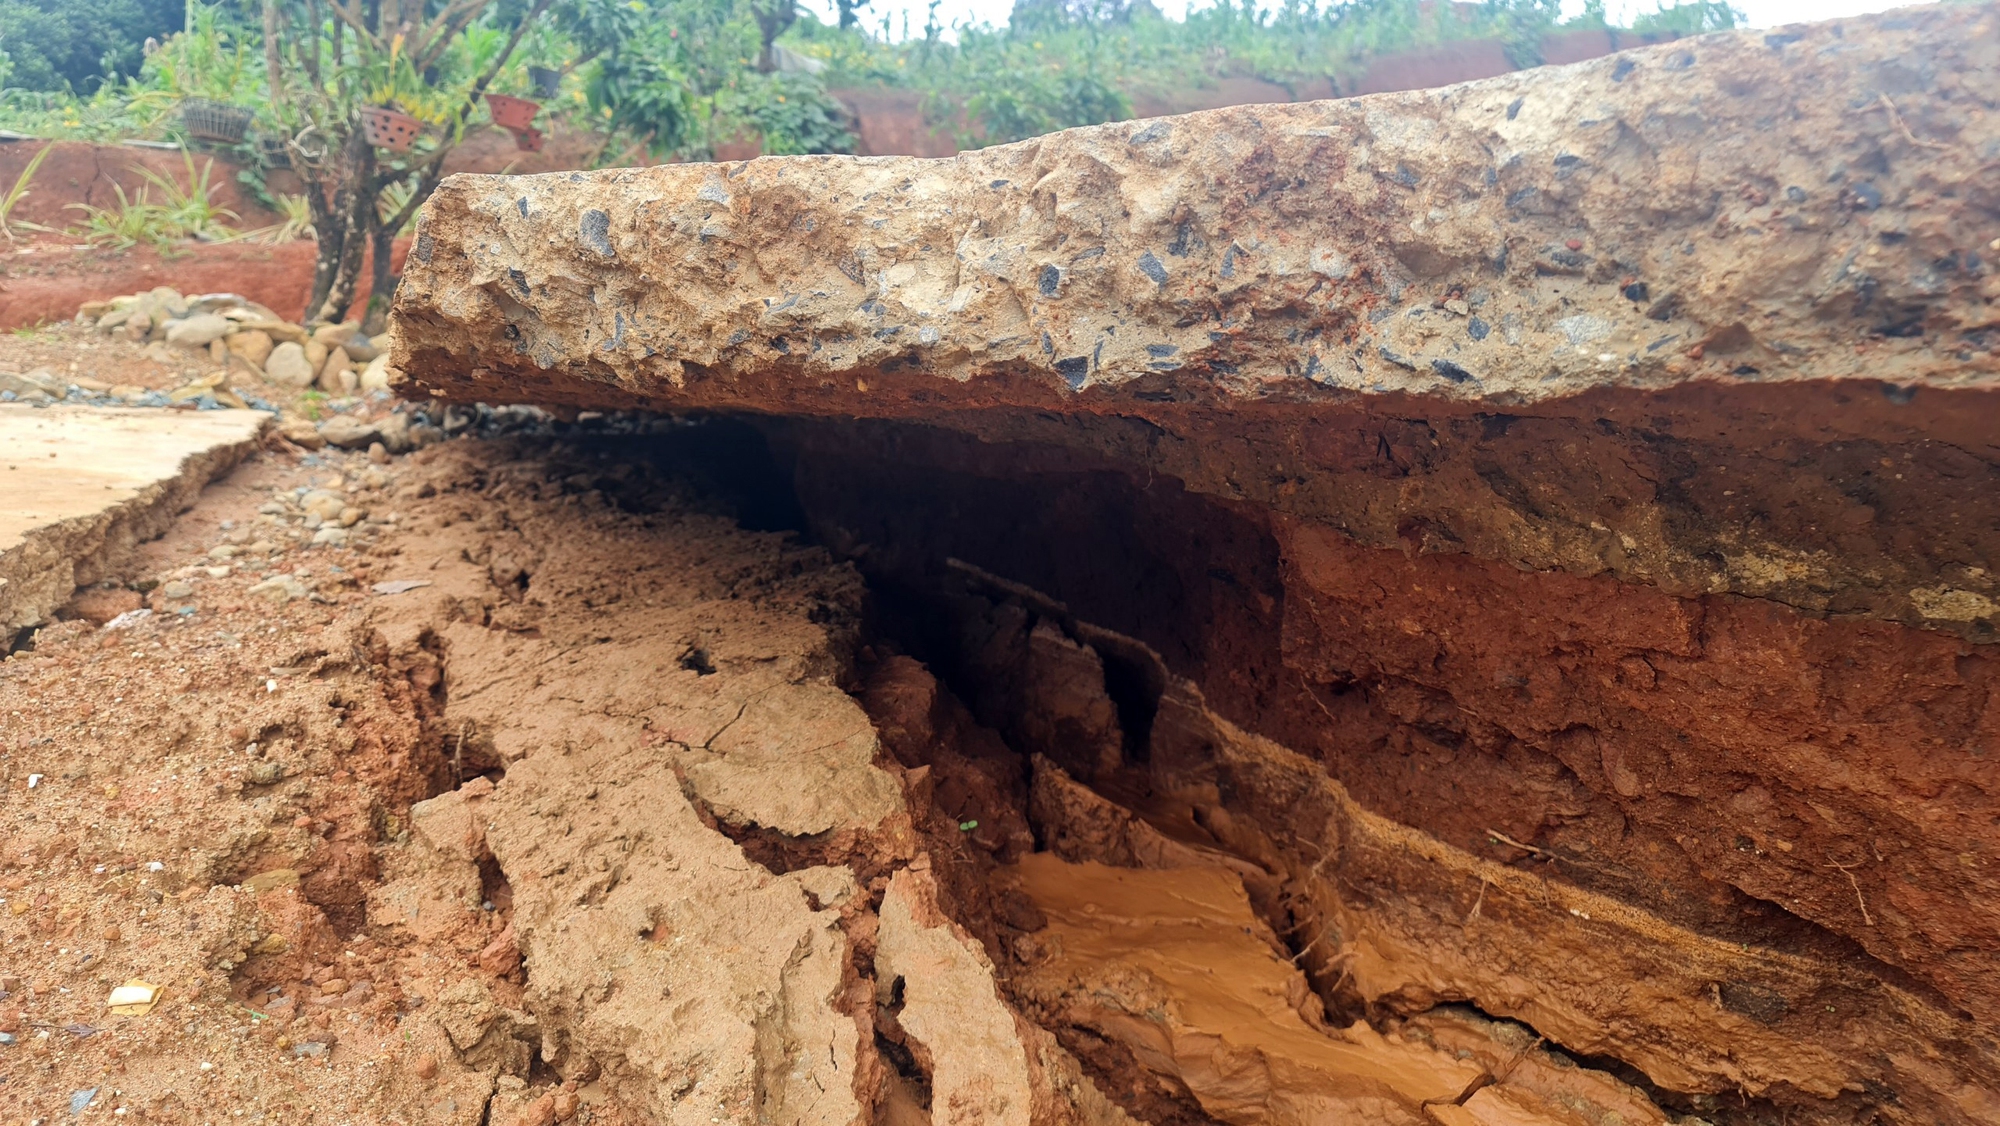 Lâm Đồng: Nhiều vết nứt vừa xuất hiện tại dự án hồ chứa nước 500 tỉ đồng - Ảnh 8.